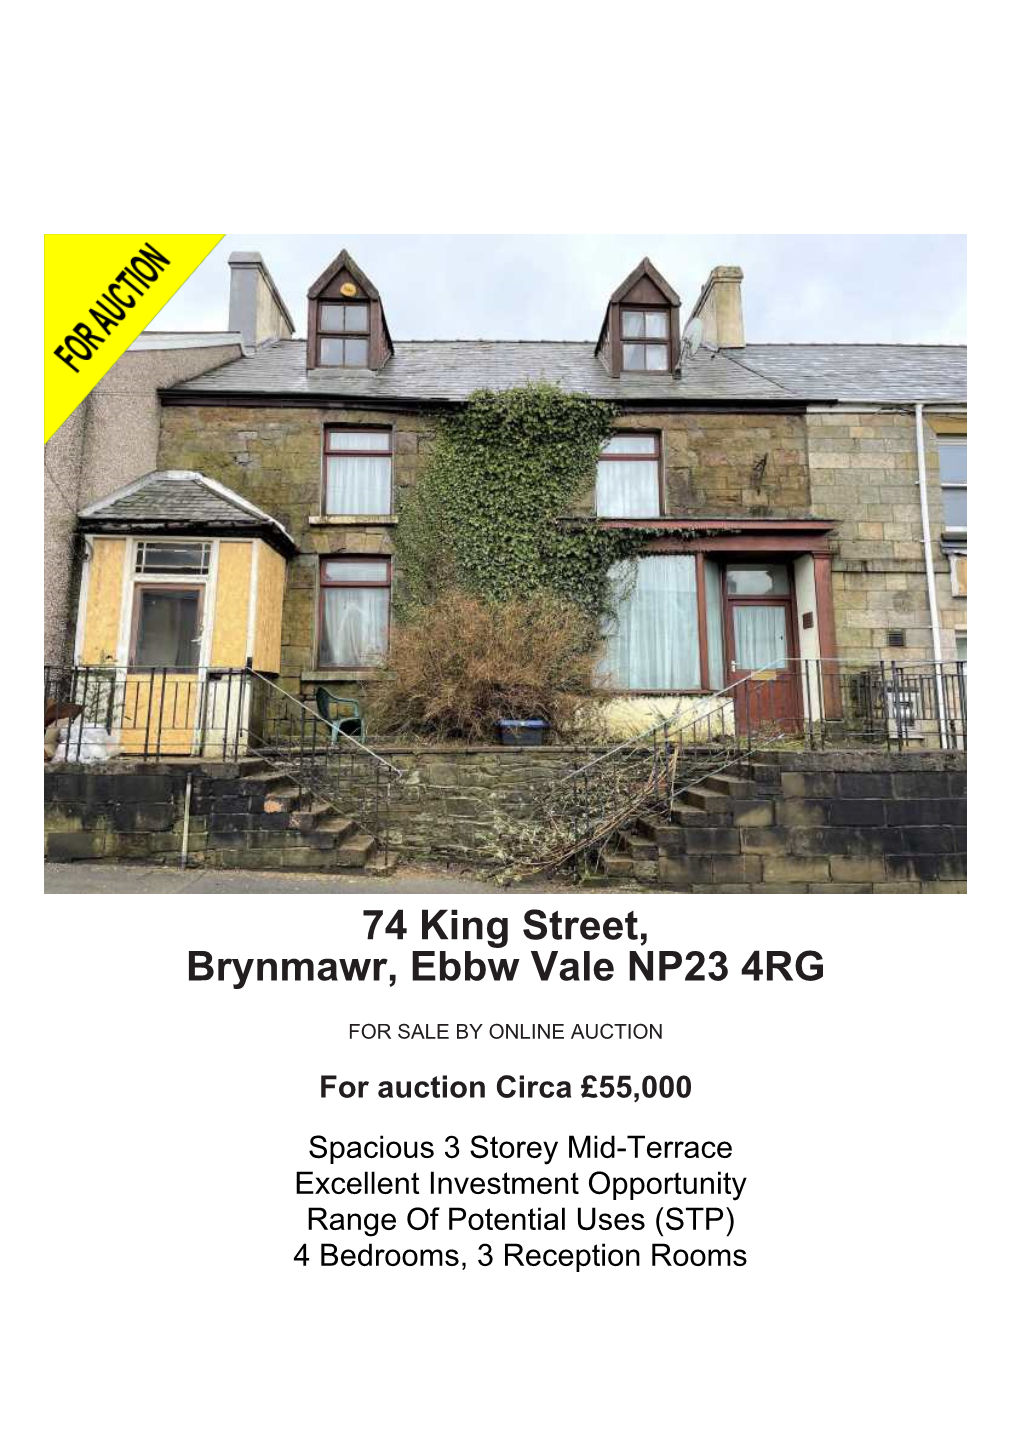 74 King Street, Brynmawr, Ebbw Vale NP23 4RG